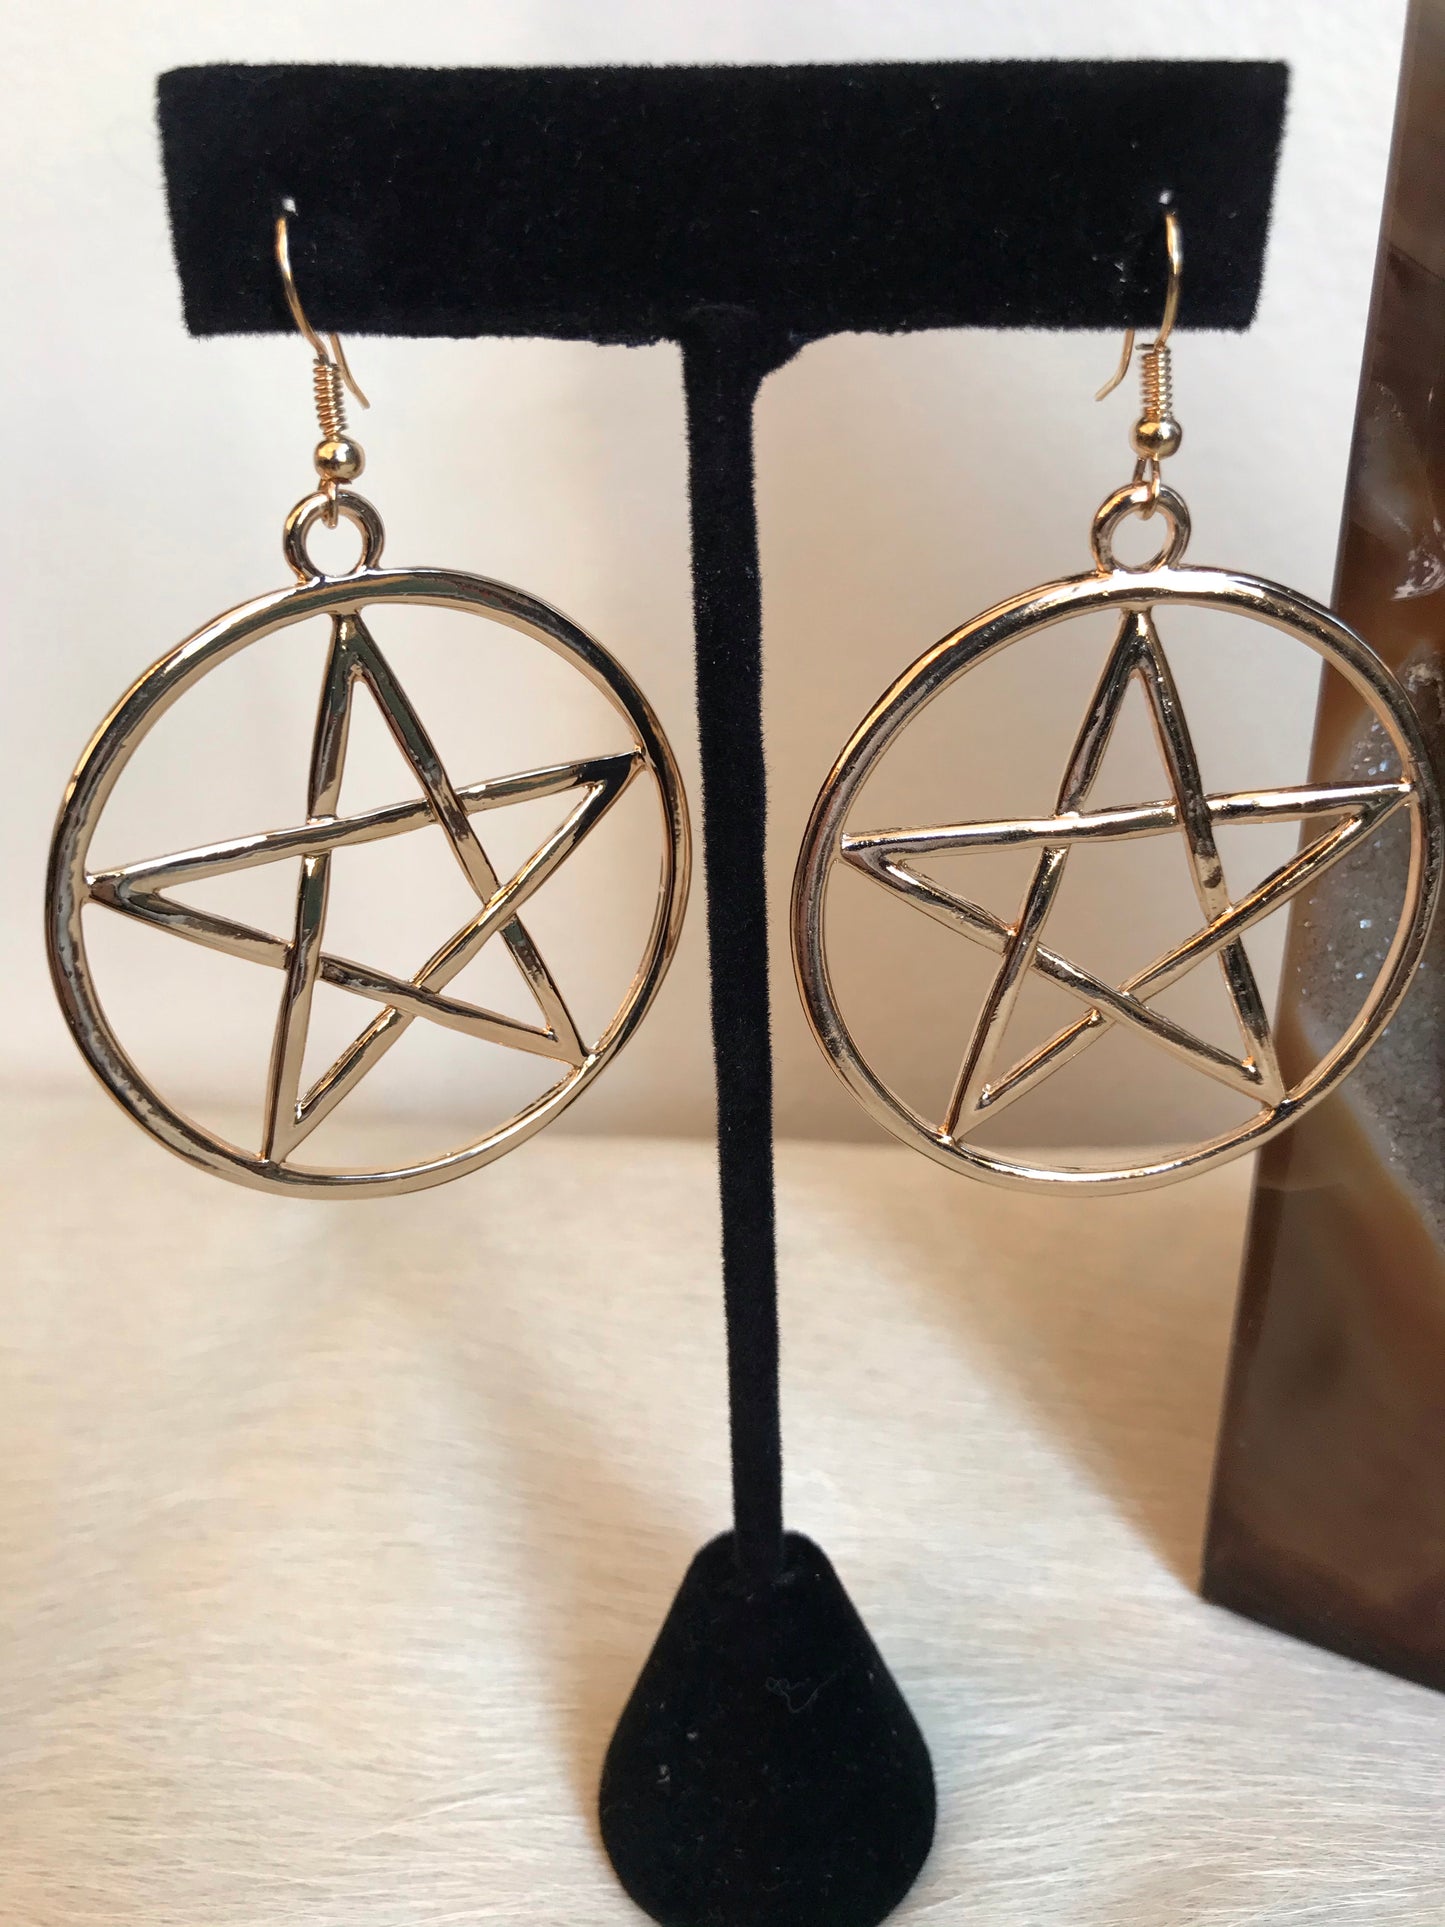 Gold Pentagram Earrings